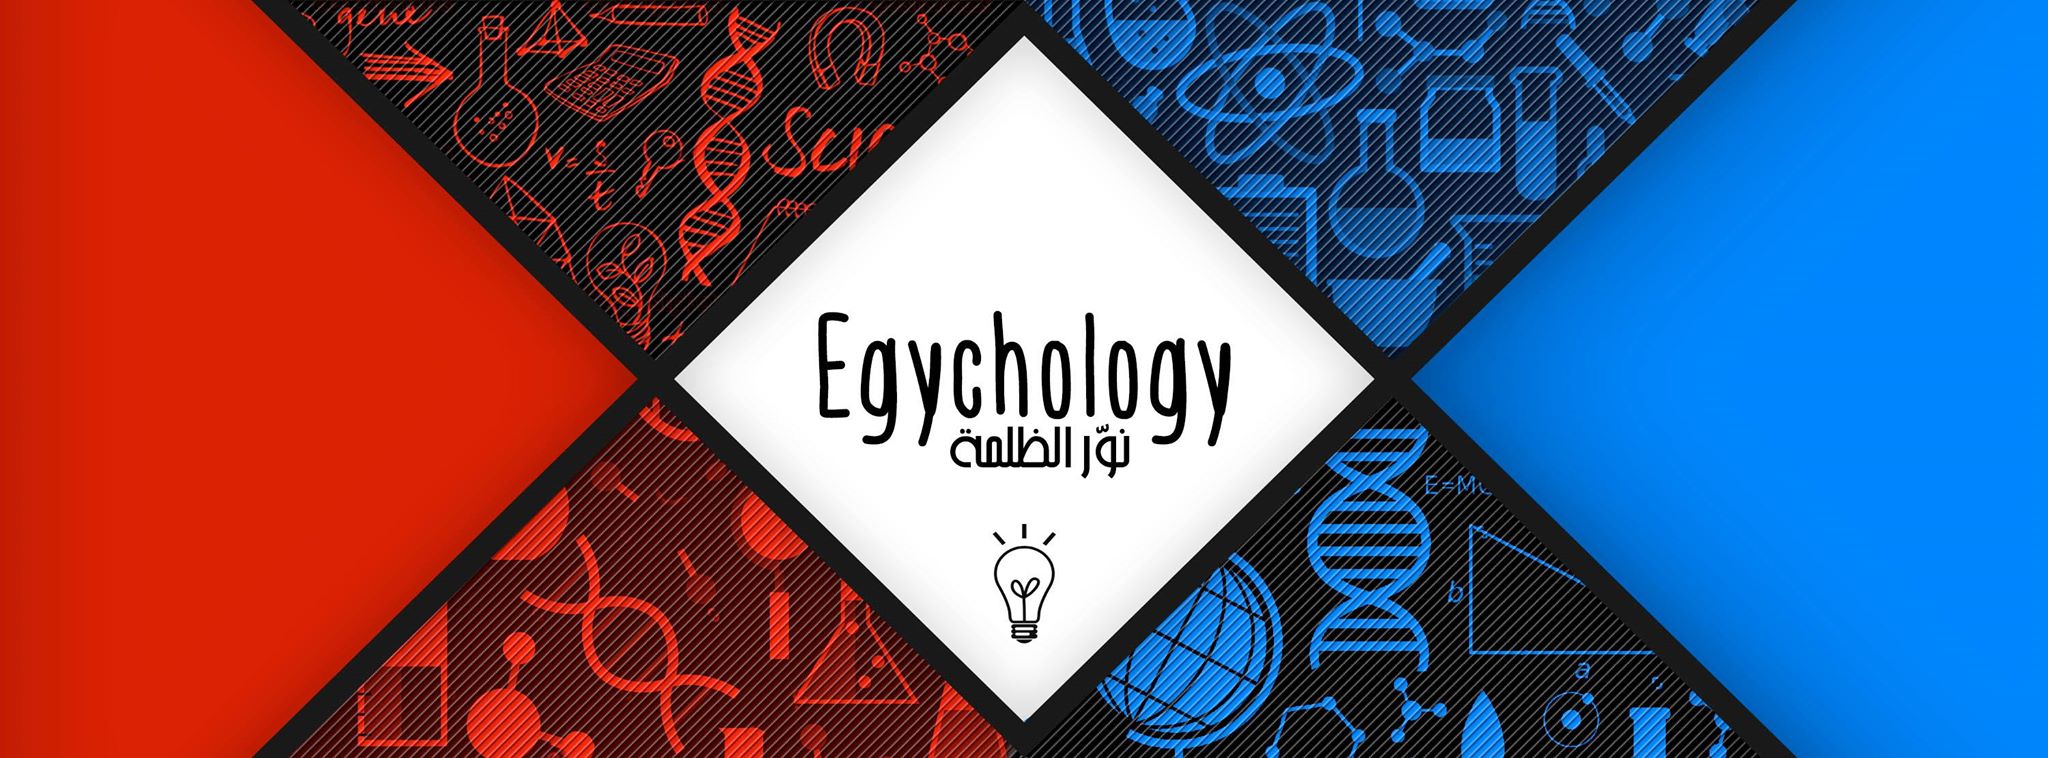 صفحة ايجيكولوجي - المحتوى العربي على الانترنت